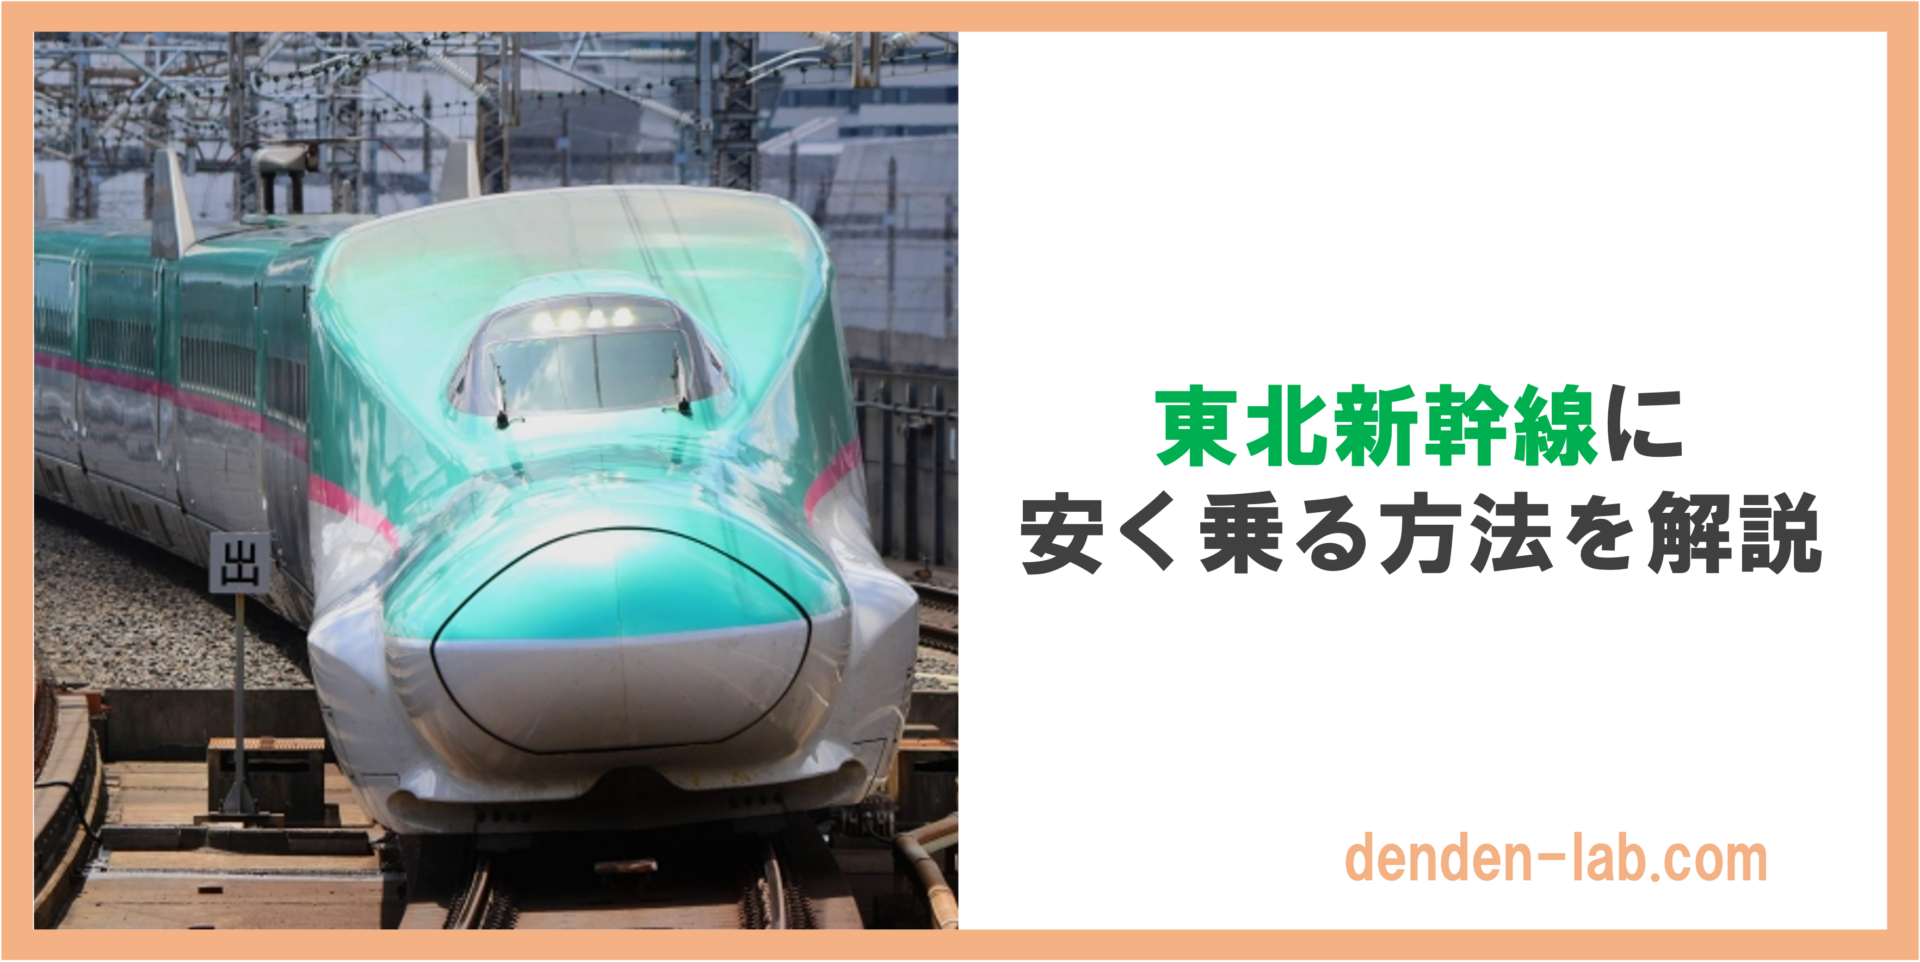 東北新幹線に安く乗る方法を解説